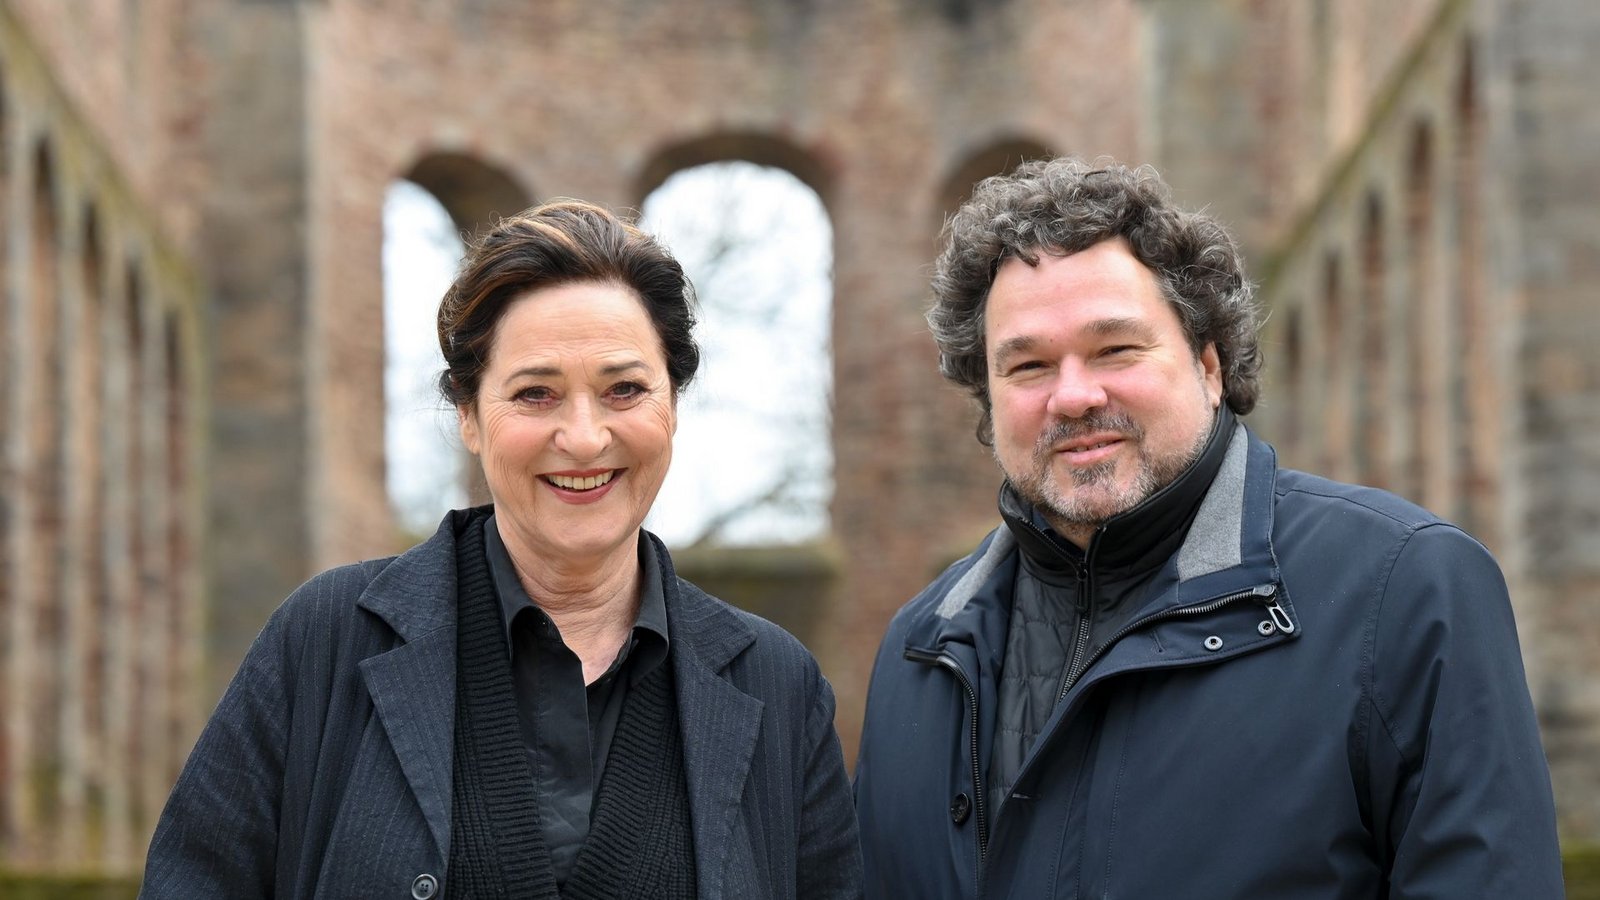 Schauspielerin Charlotte Schwab (l) mit Intendant Joern Hinkel in der Stiftsruine in Bad Hersfeld.Foto: Uwe Zucchi/dpa